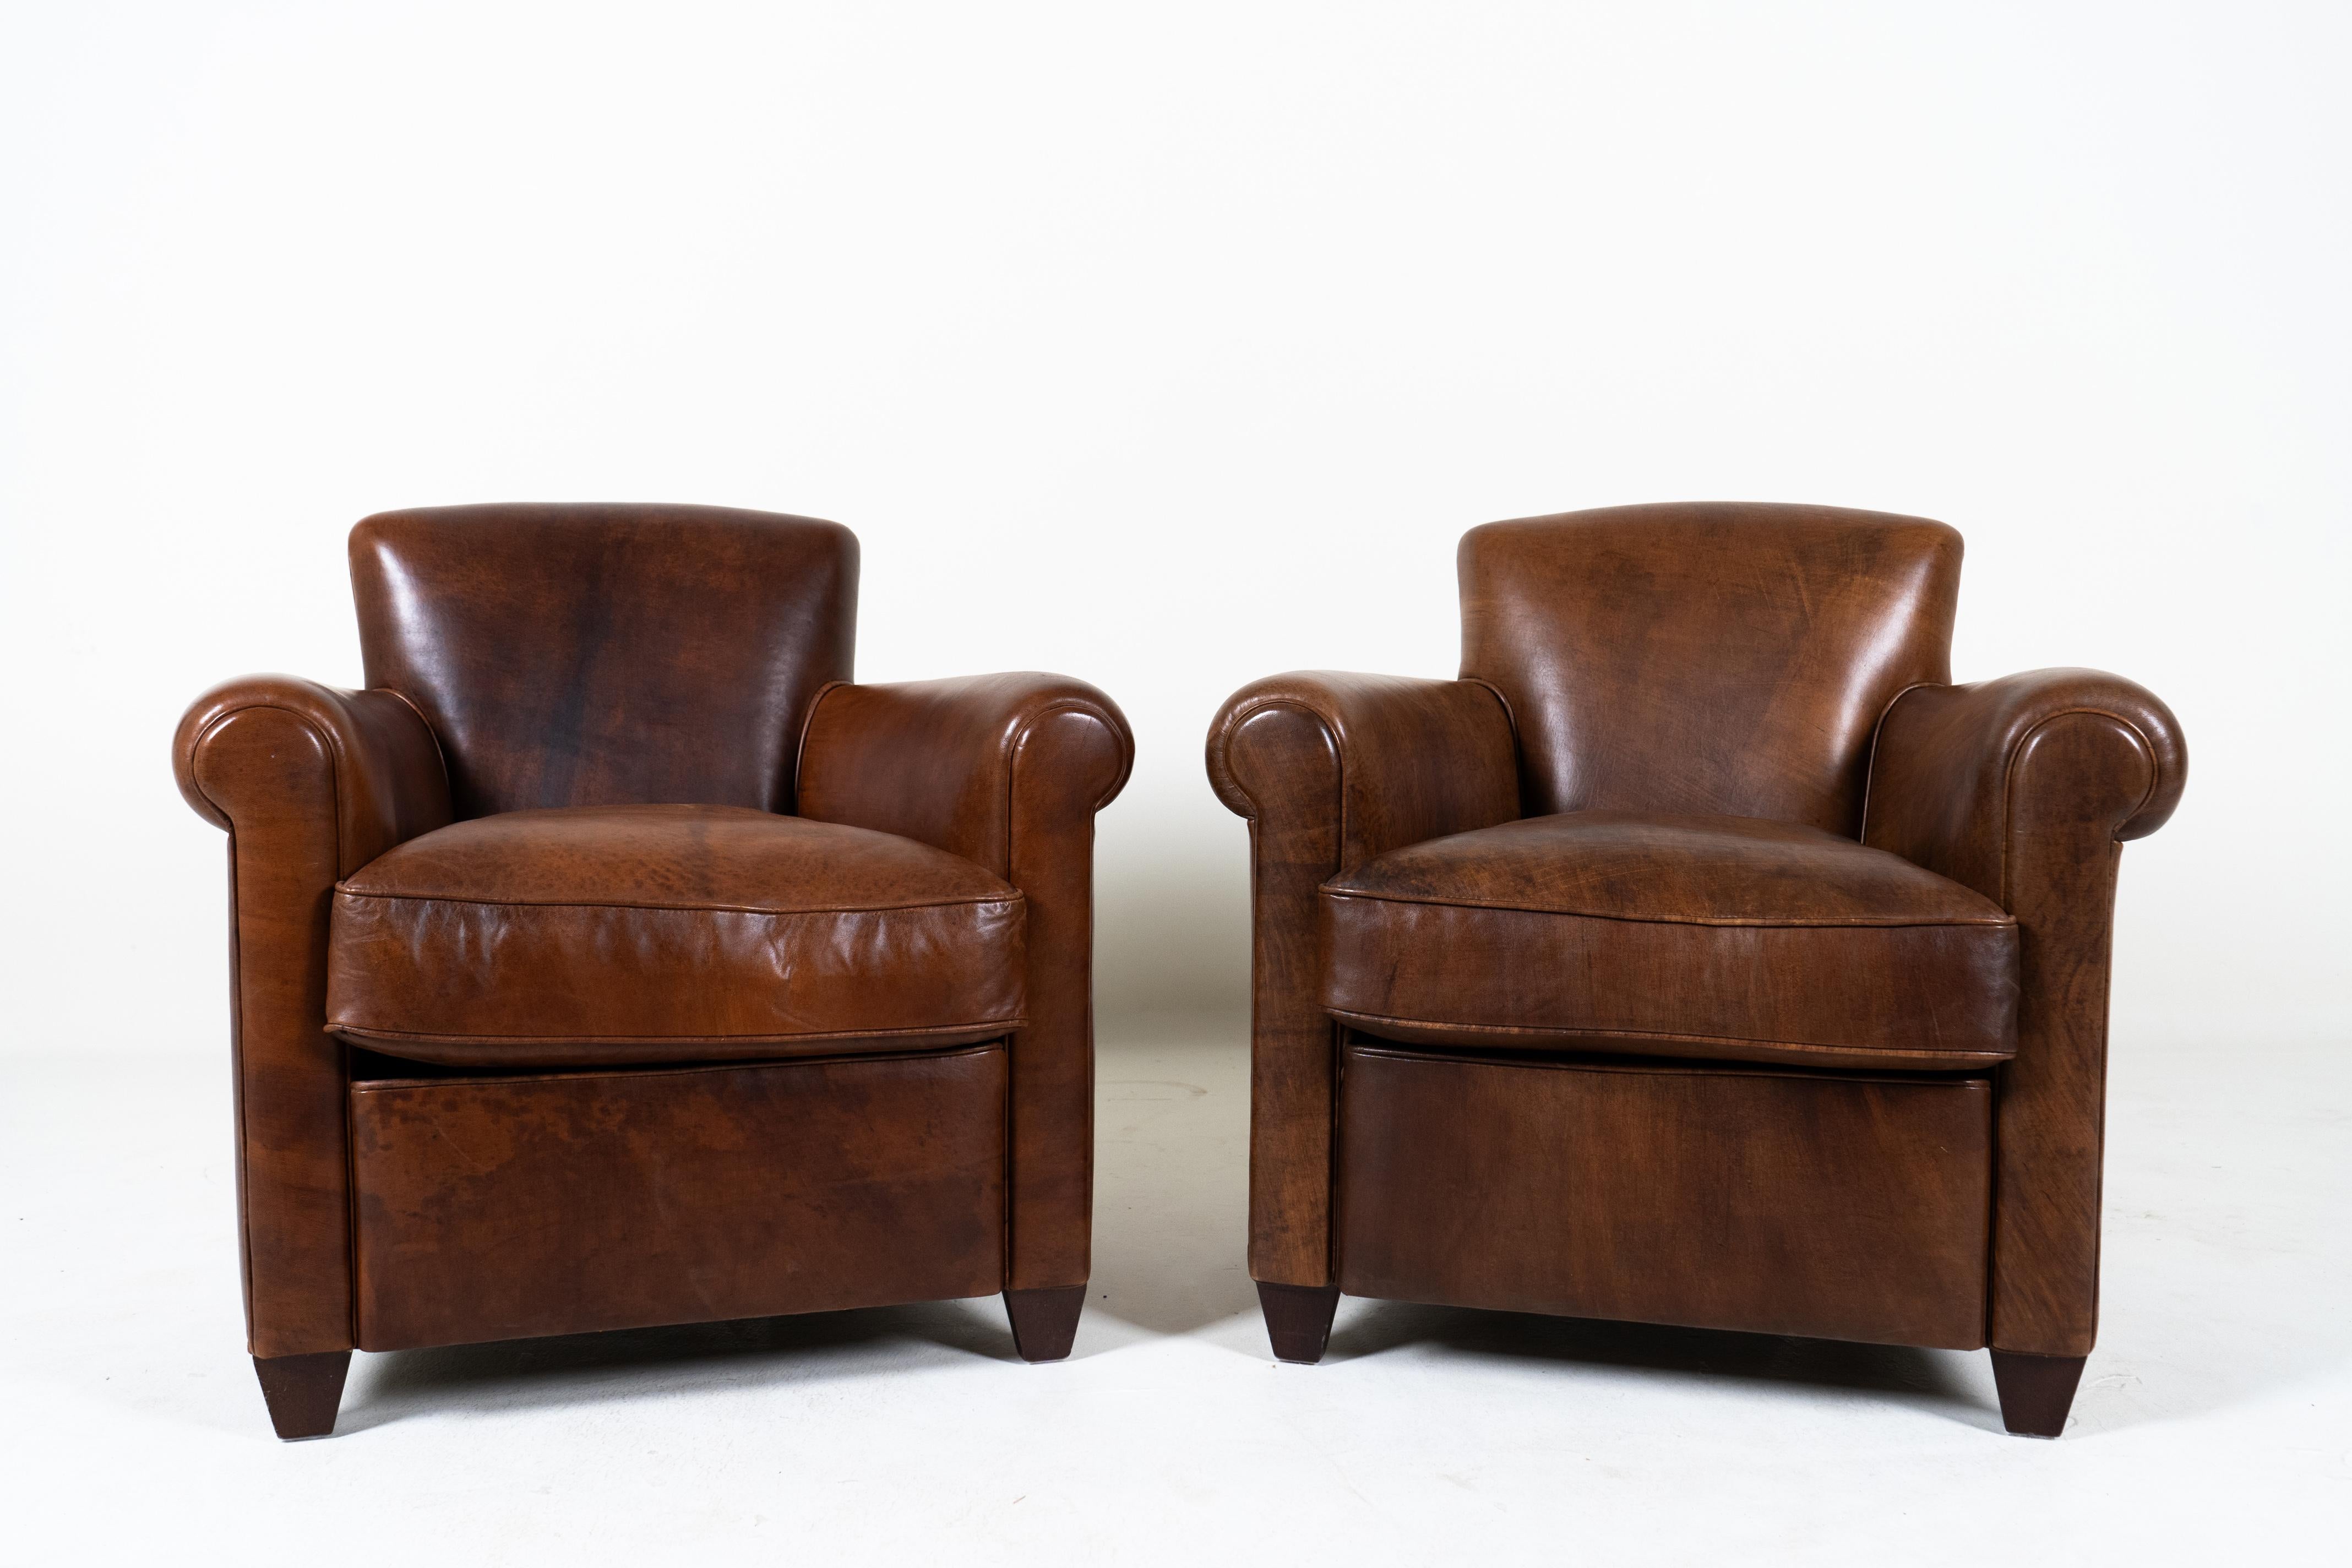 Cette paire de fauteuils club contemporains Art déco français est une trouvaille exceptionnelle. Avec un design datant de la période Art déco des années 1920-1940, ces chaises définissent une ère d'élégance et de confort parisien. La délicate